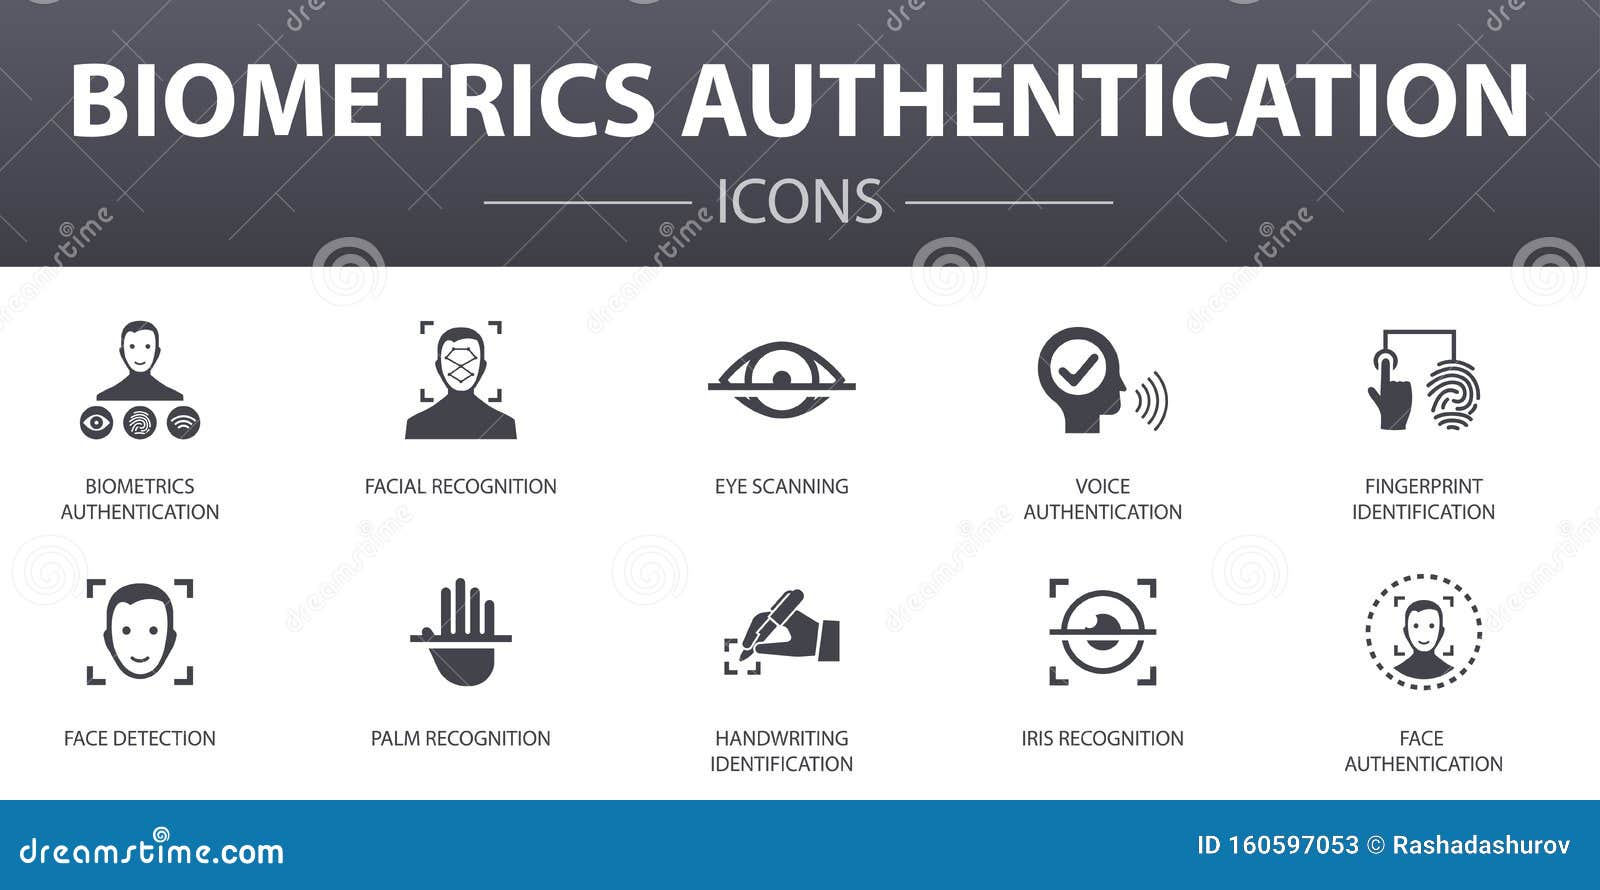 biometrics authentication simple concept